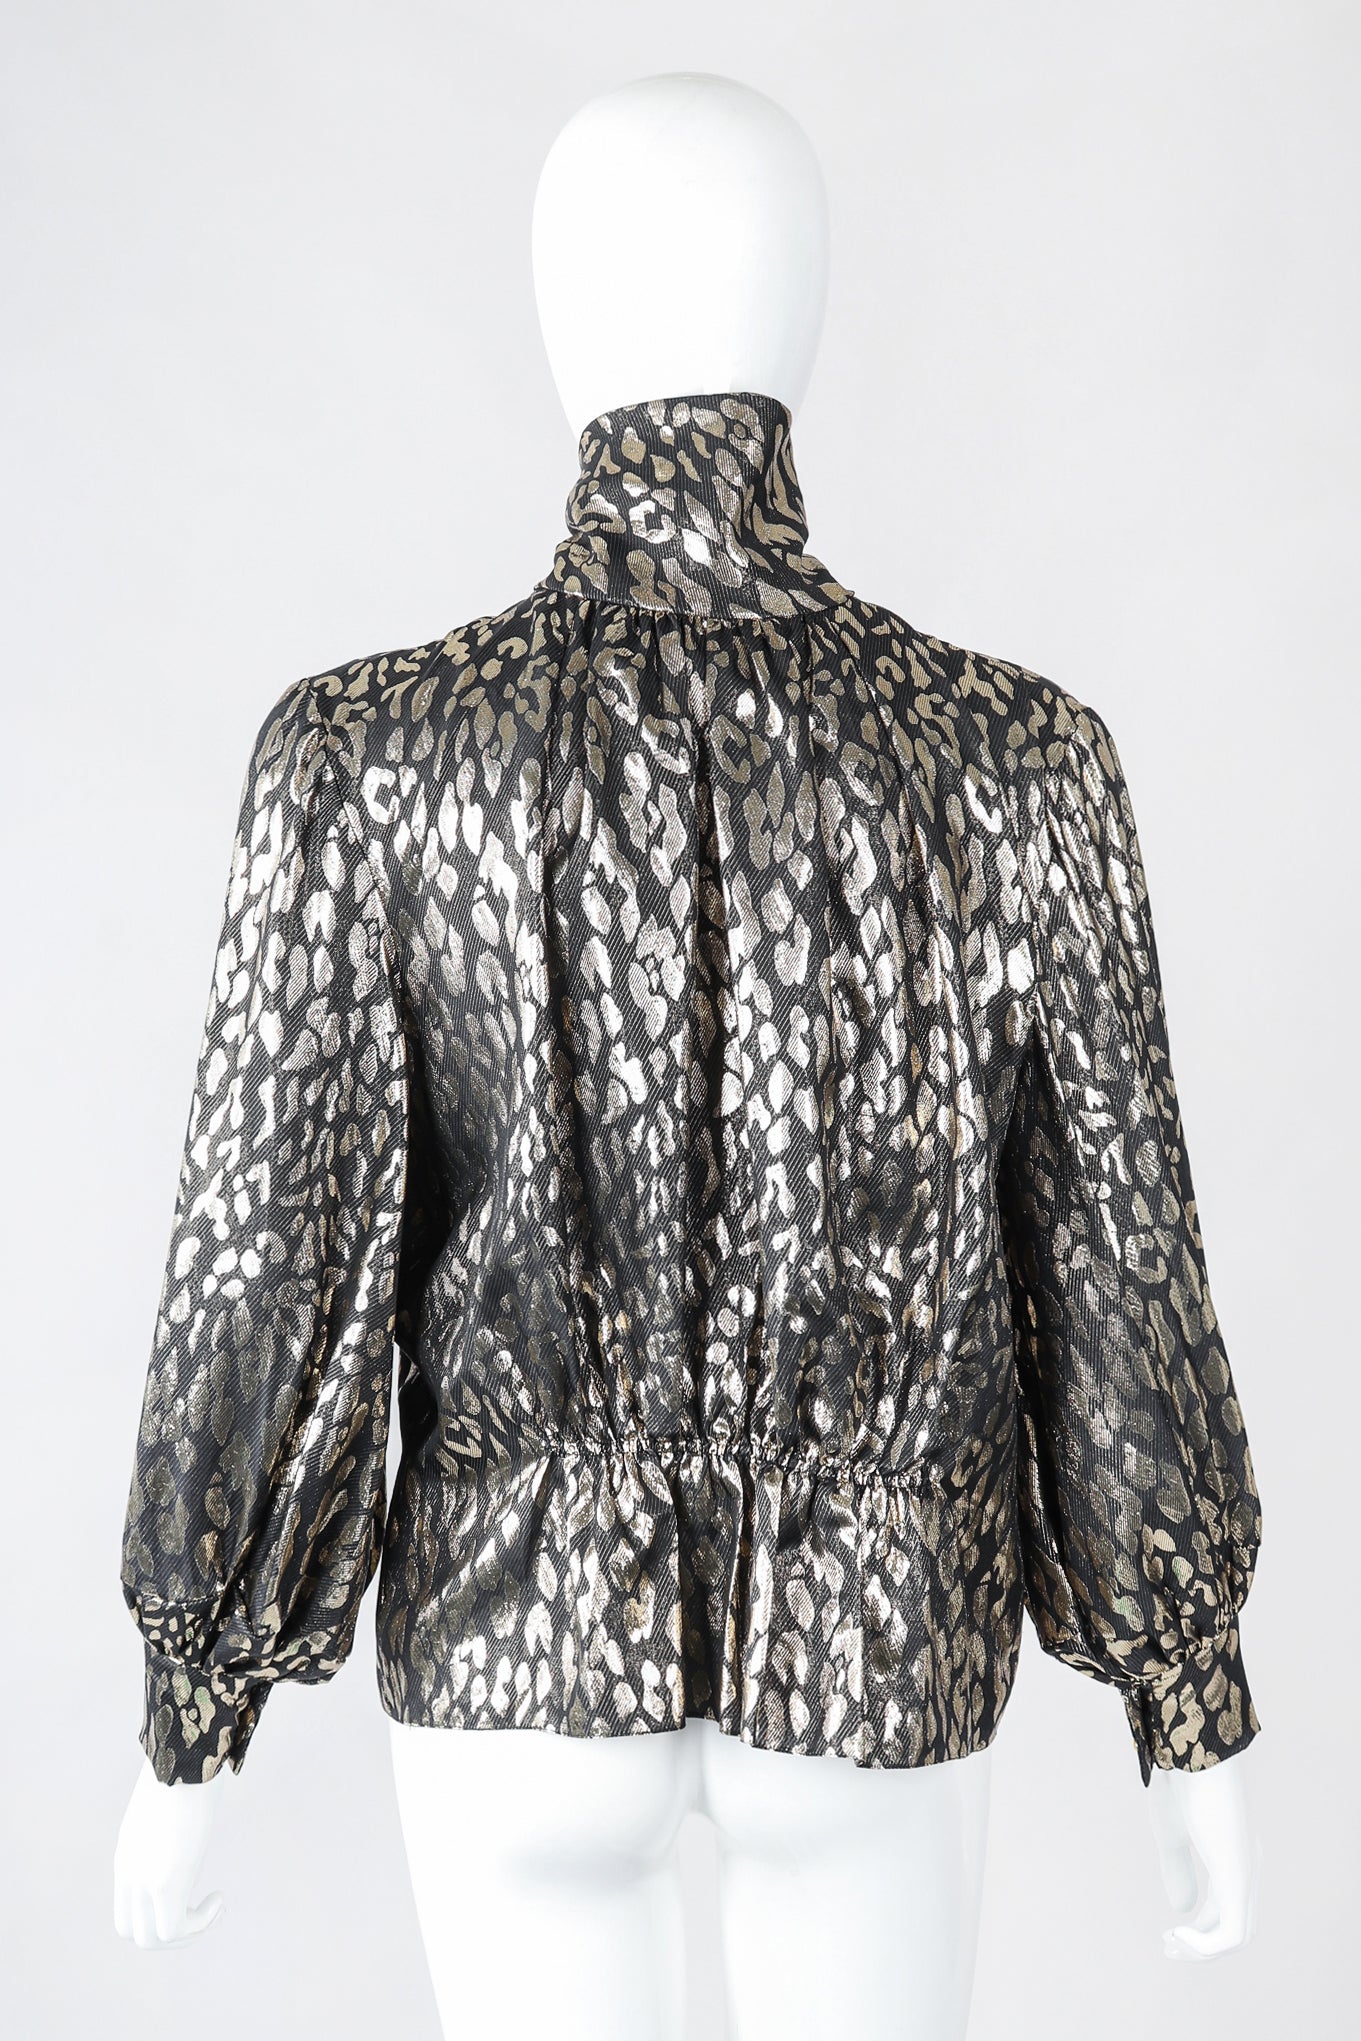 Recess Los Angeles Designer Consignment Vintage Pauline Trigere Leopard Lamé Blouse